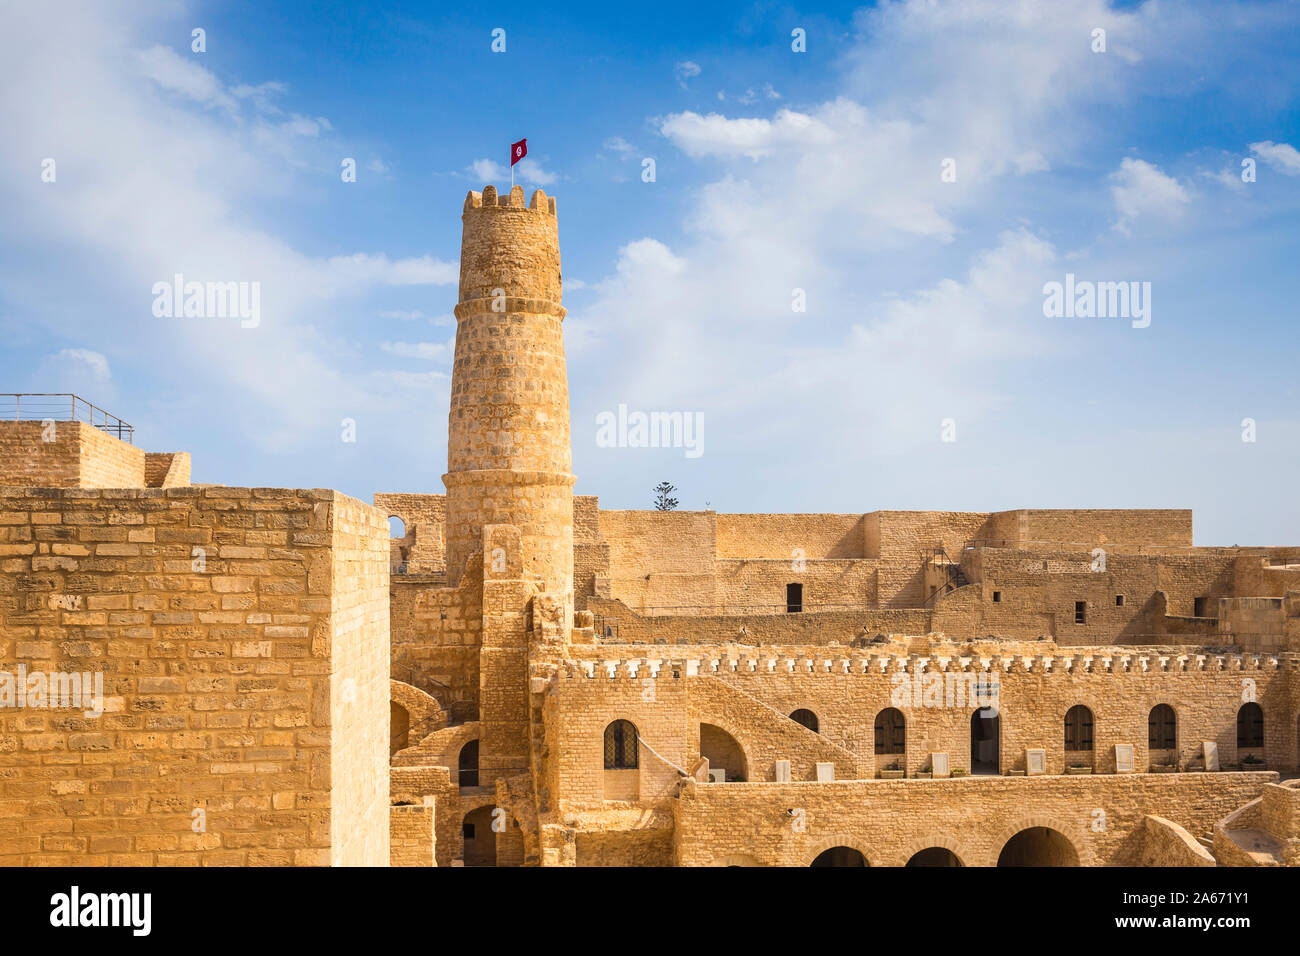 Tunisia, Monastir, Rabat - fortified Islamic monastry Stock Photo